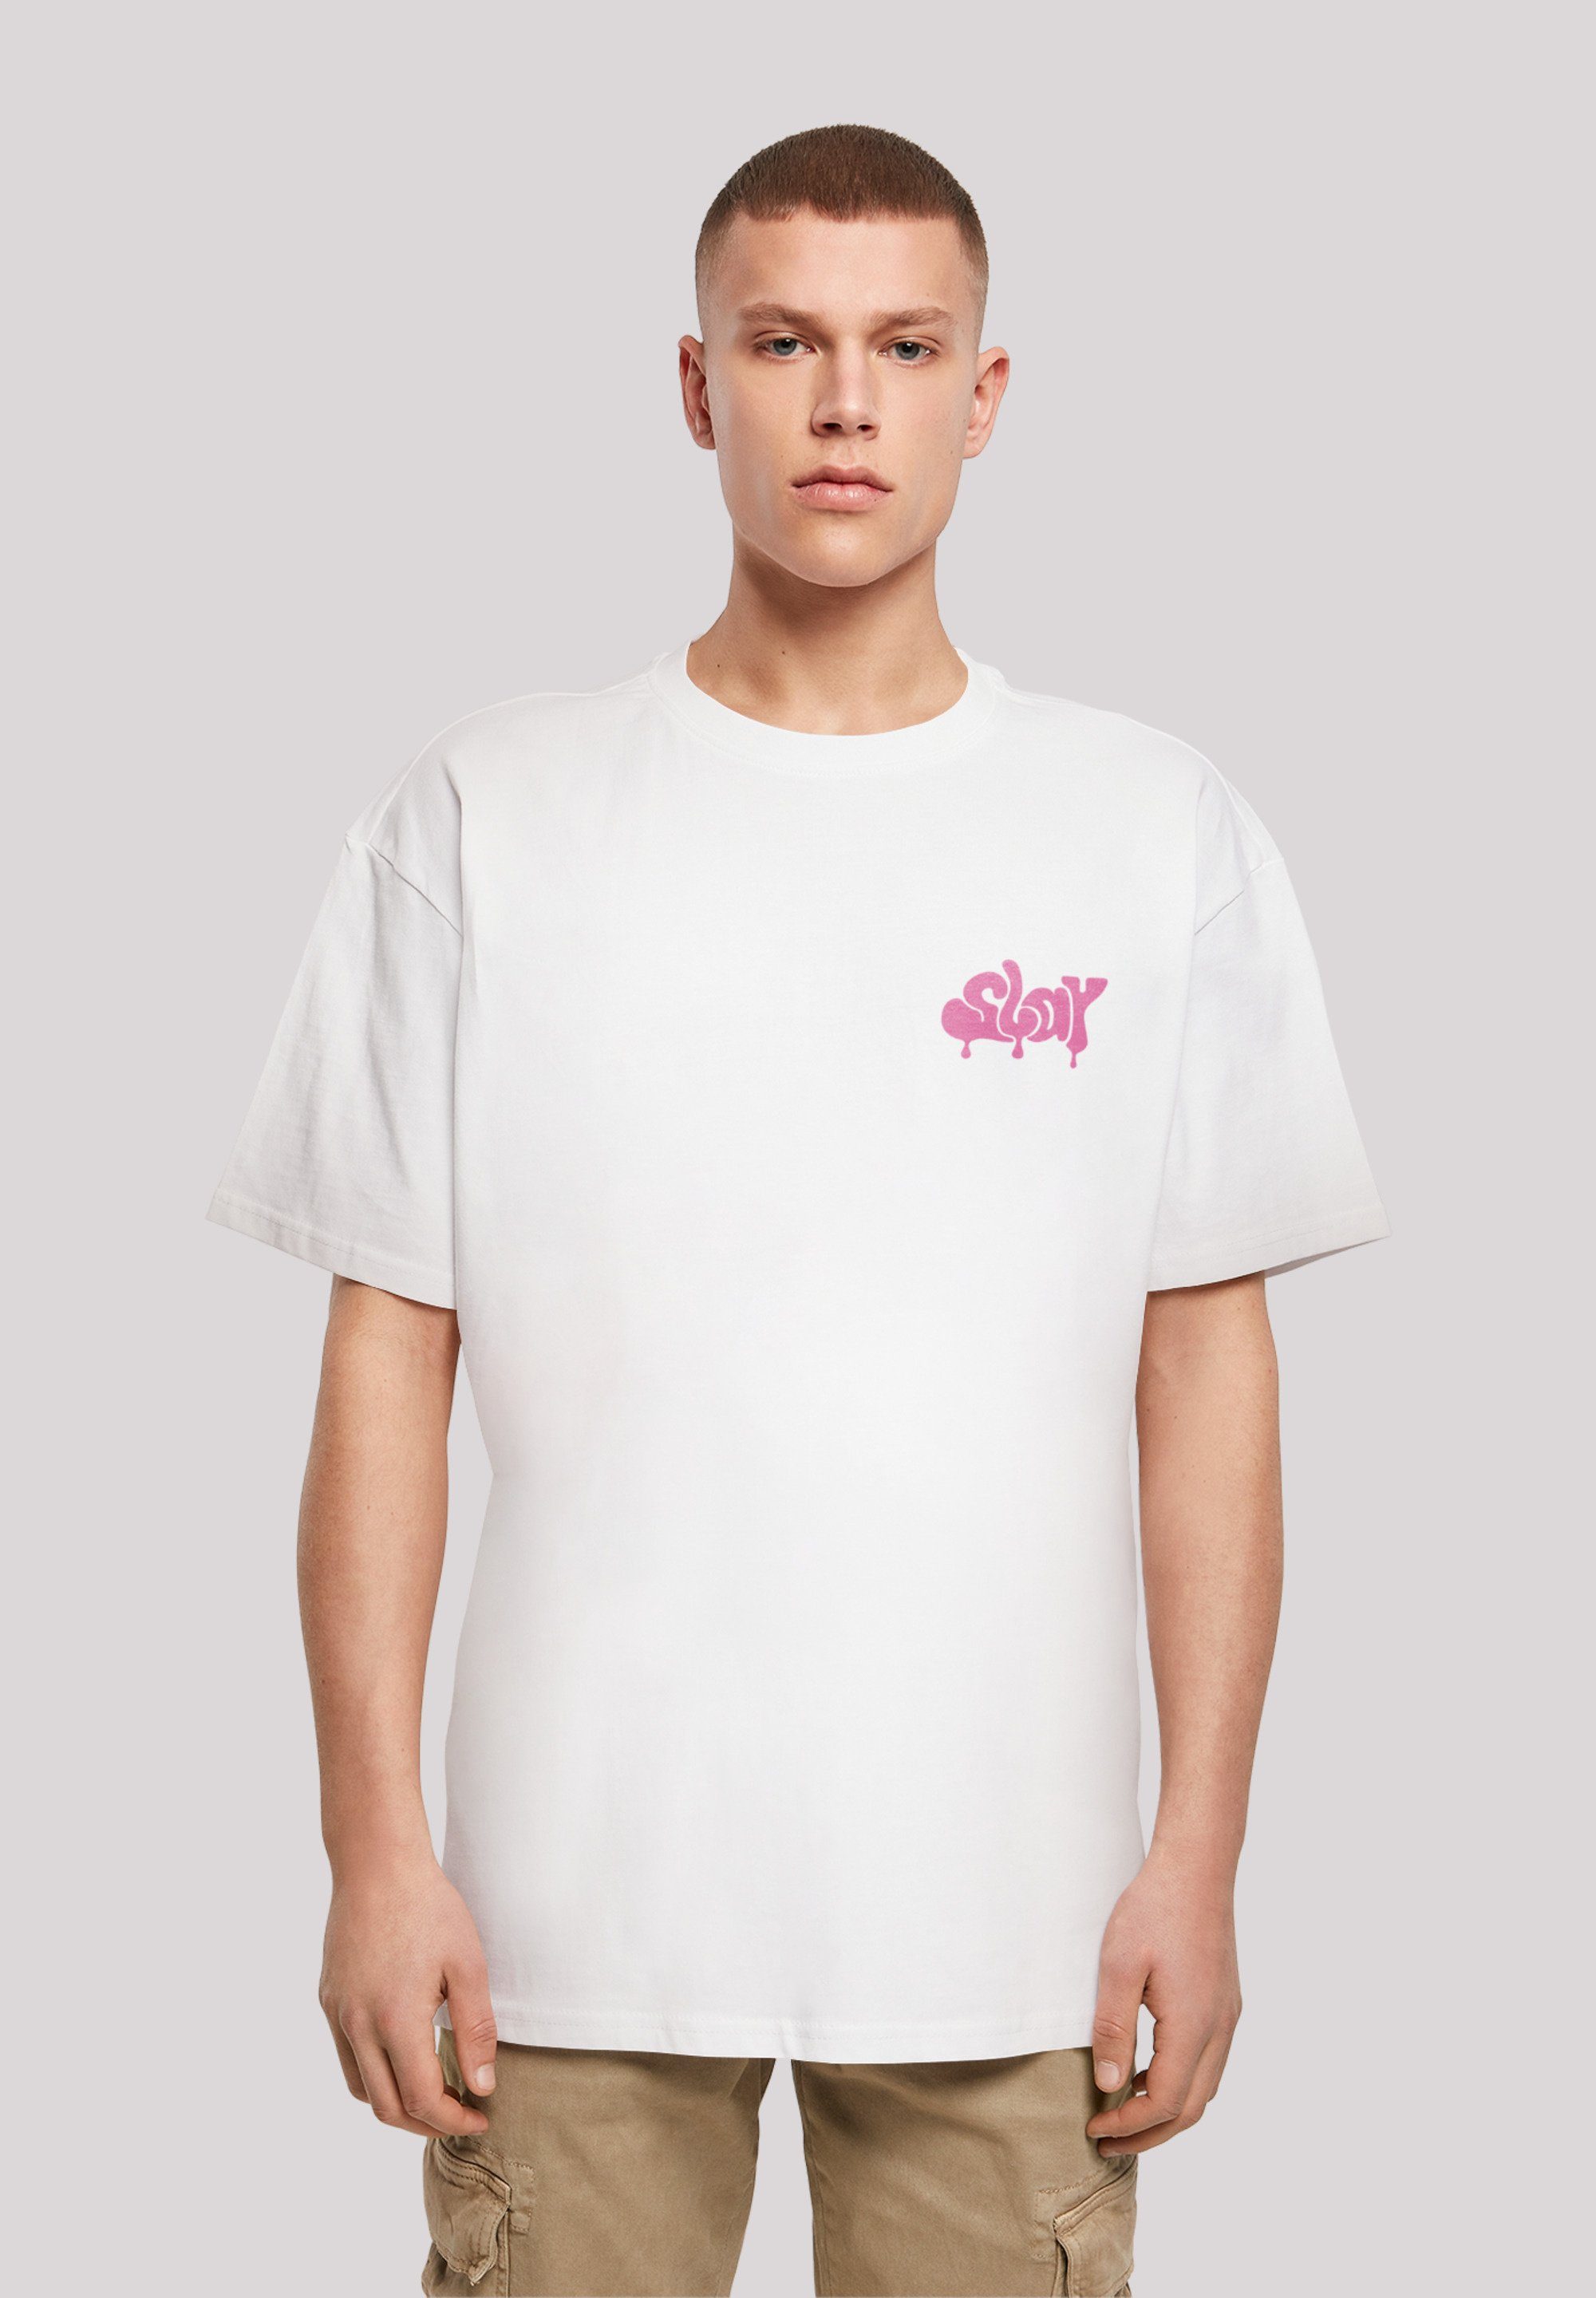 F4NT4STIC T-Shirt SLAY Jugenwort Pink Print weiß